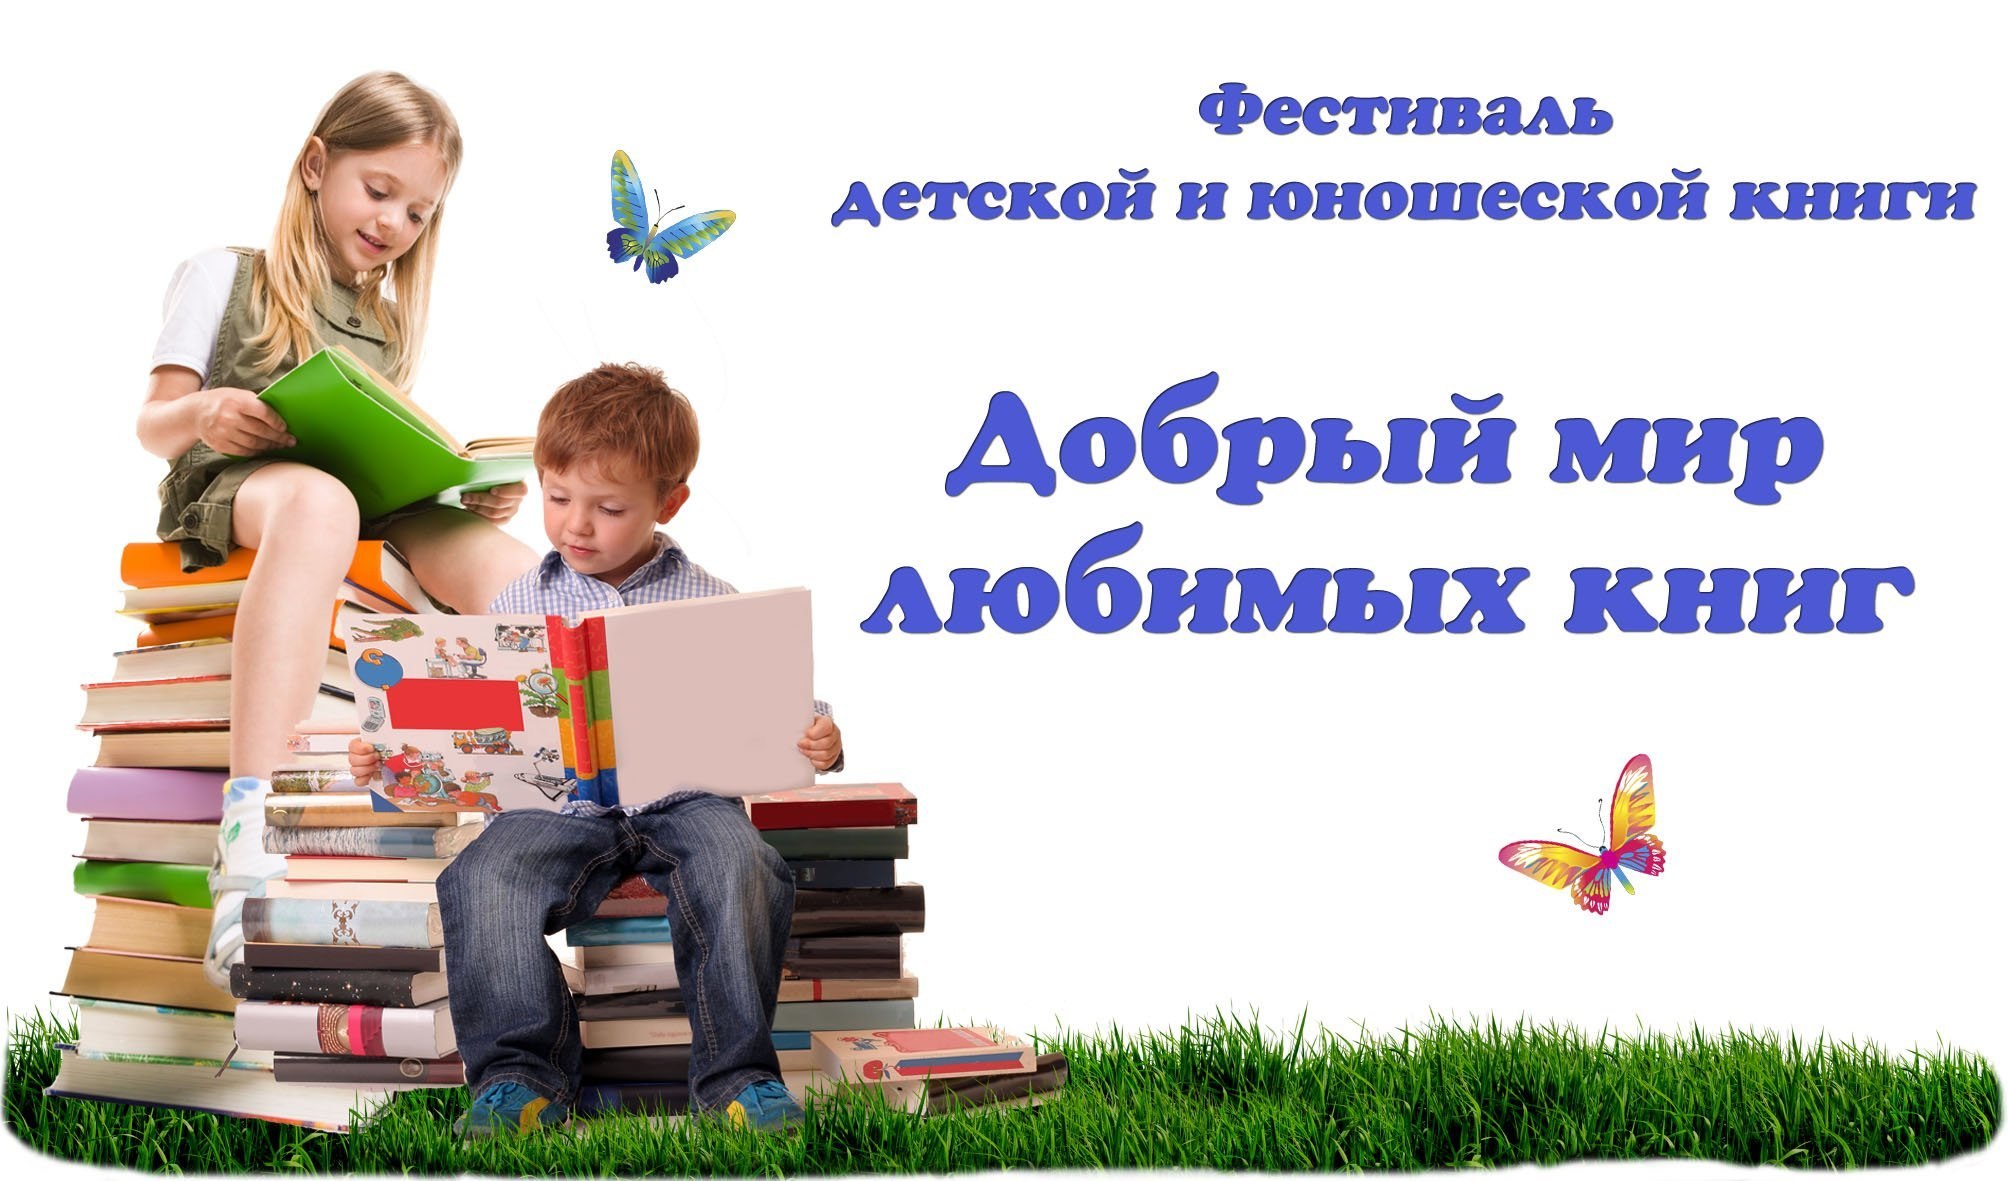 Тема недели любимые книги. Международный день детской книги. Мир детской книги в библиотеке. Фон неделя детской книги в библиотеке. День чтения книги.